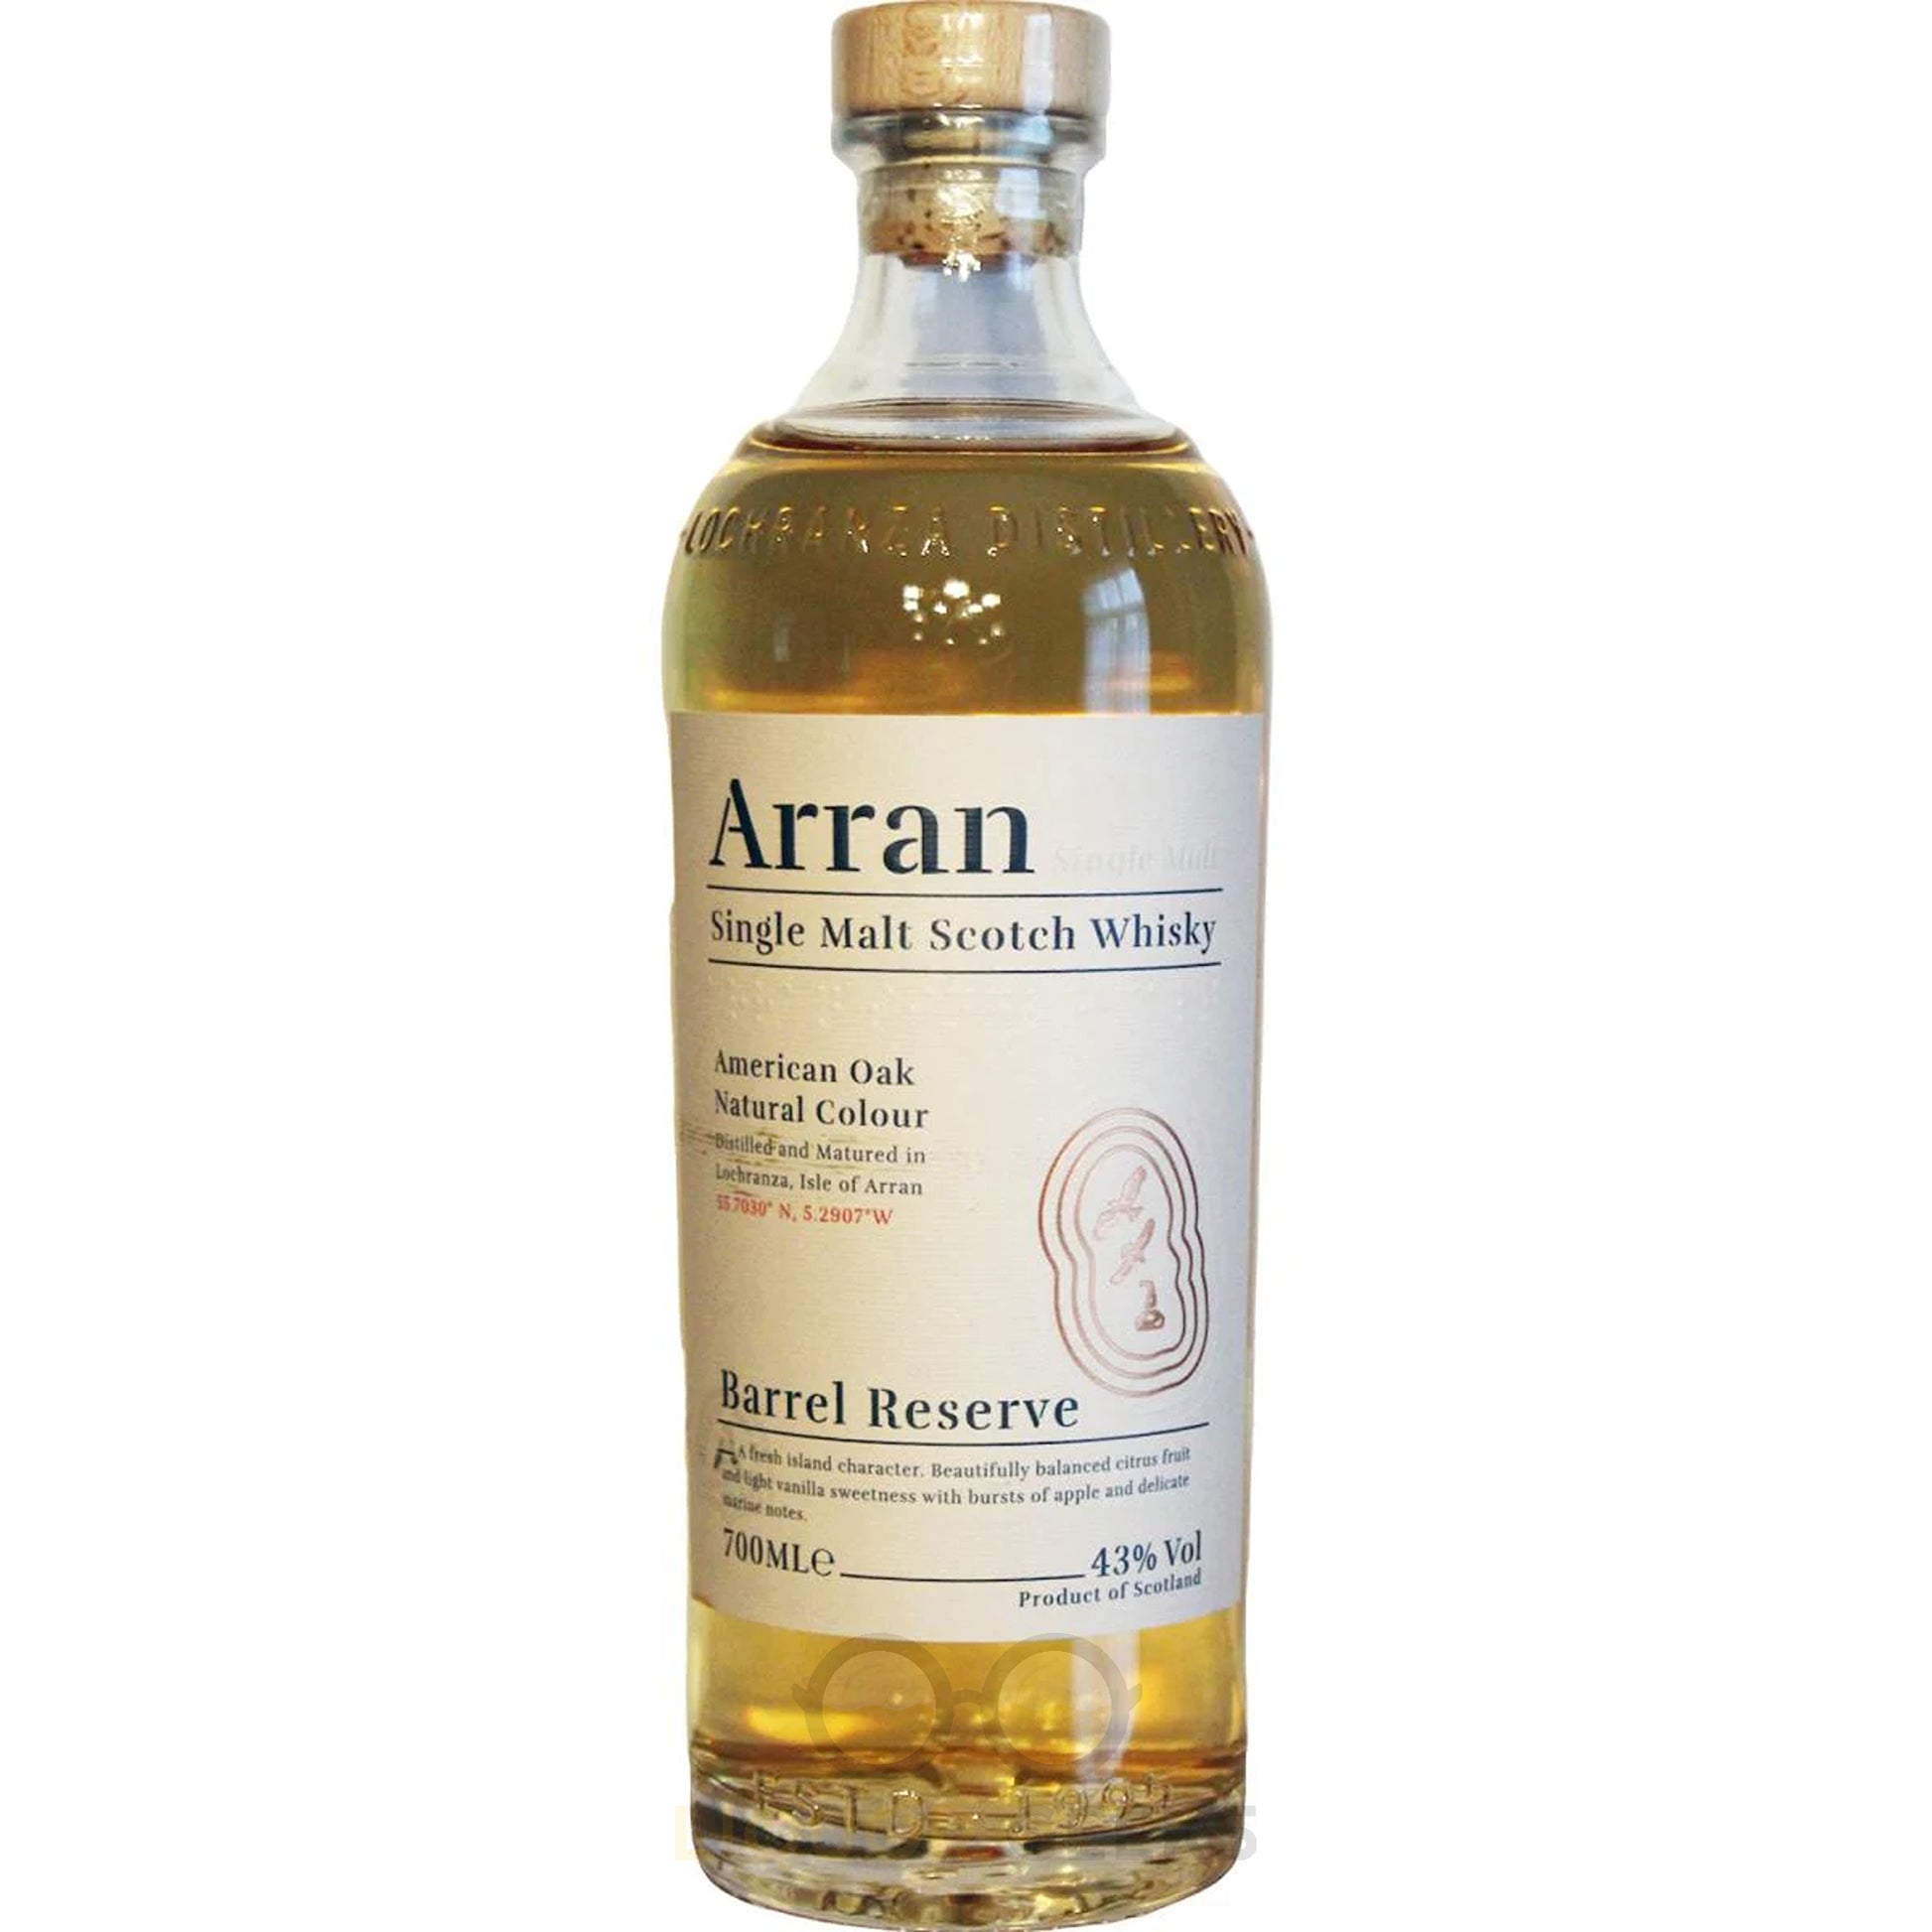 Arran Barrel Reserve Single Malt Scotch Whisky - Liquor Geeks